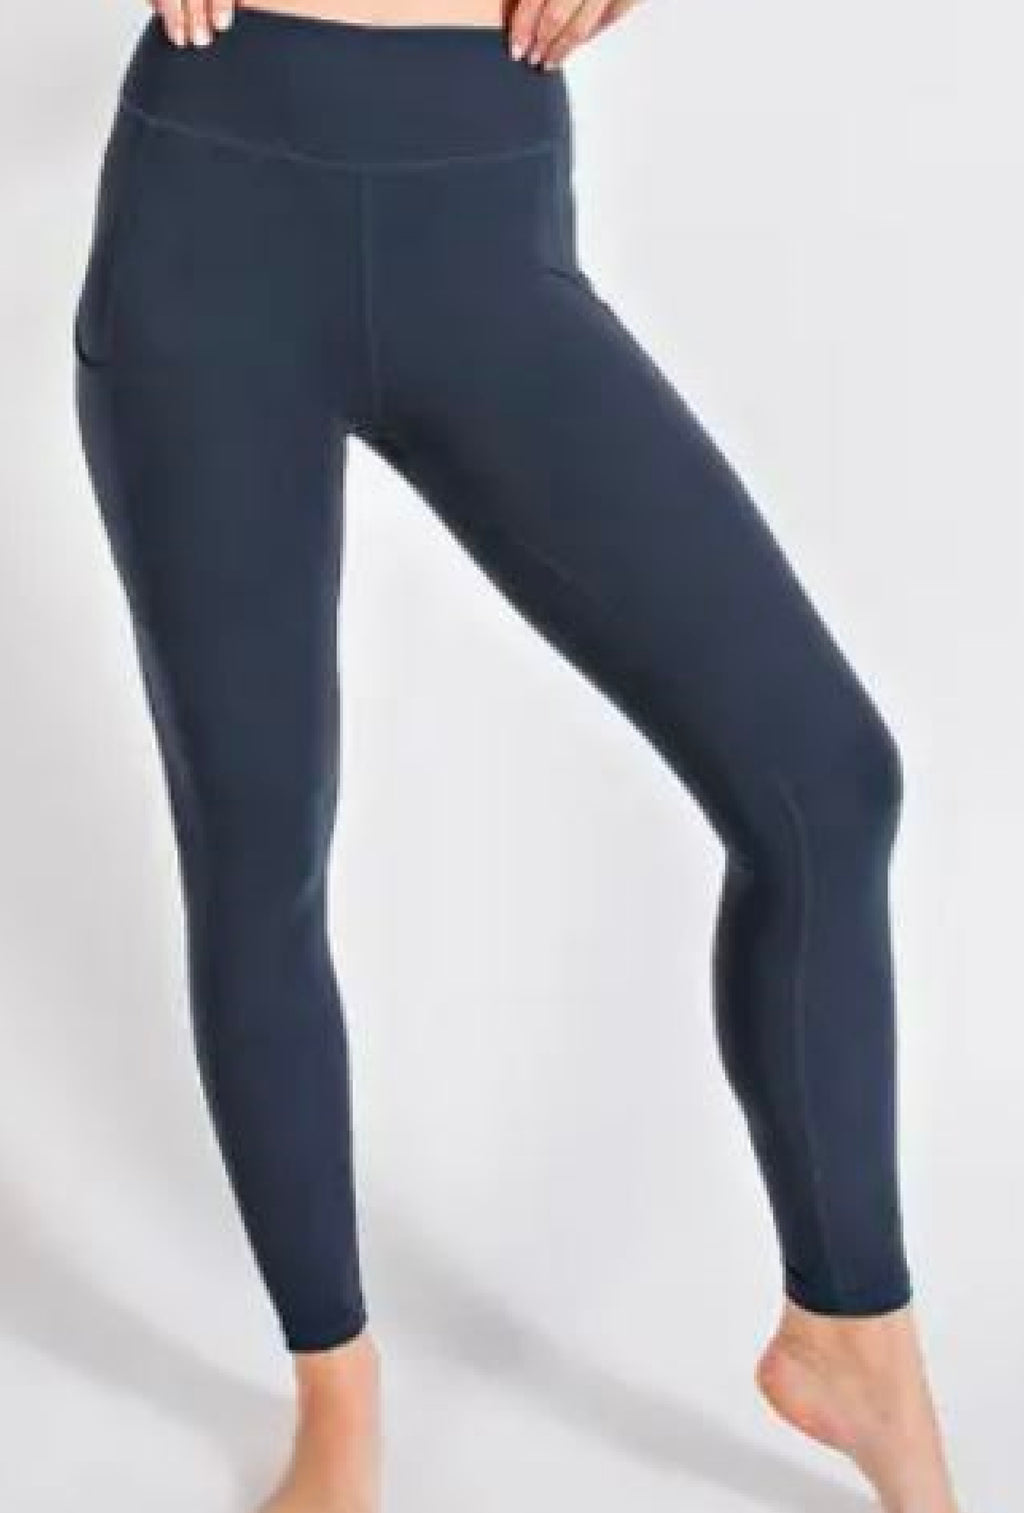 Ms Ivy - Butter soft basic full length leggings with pocket - Black